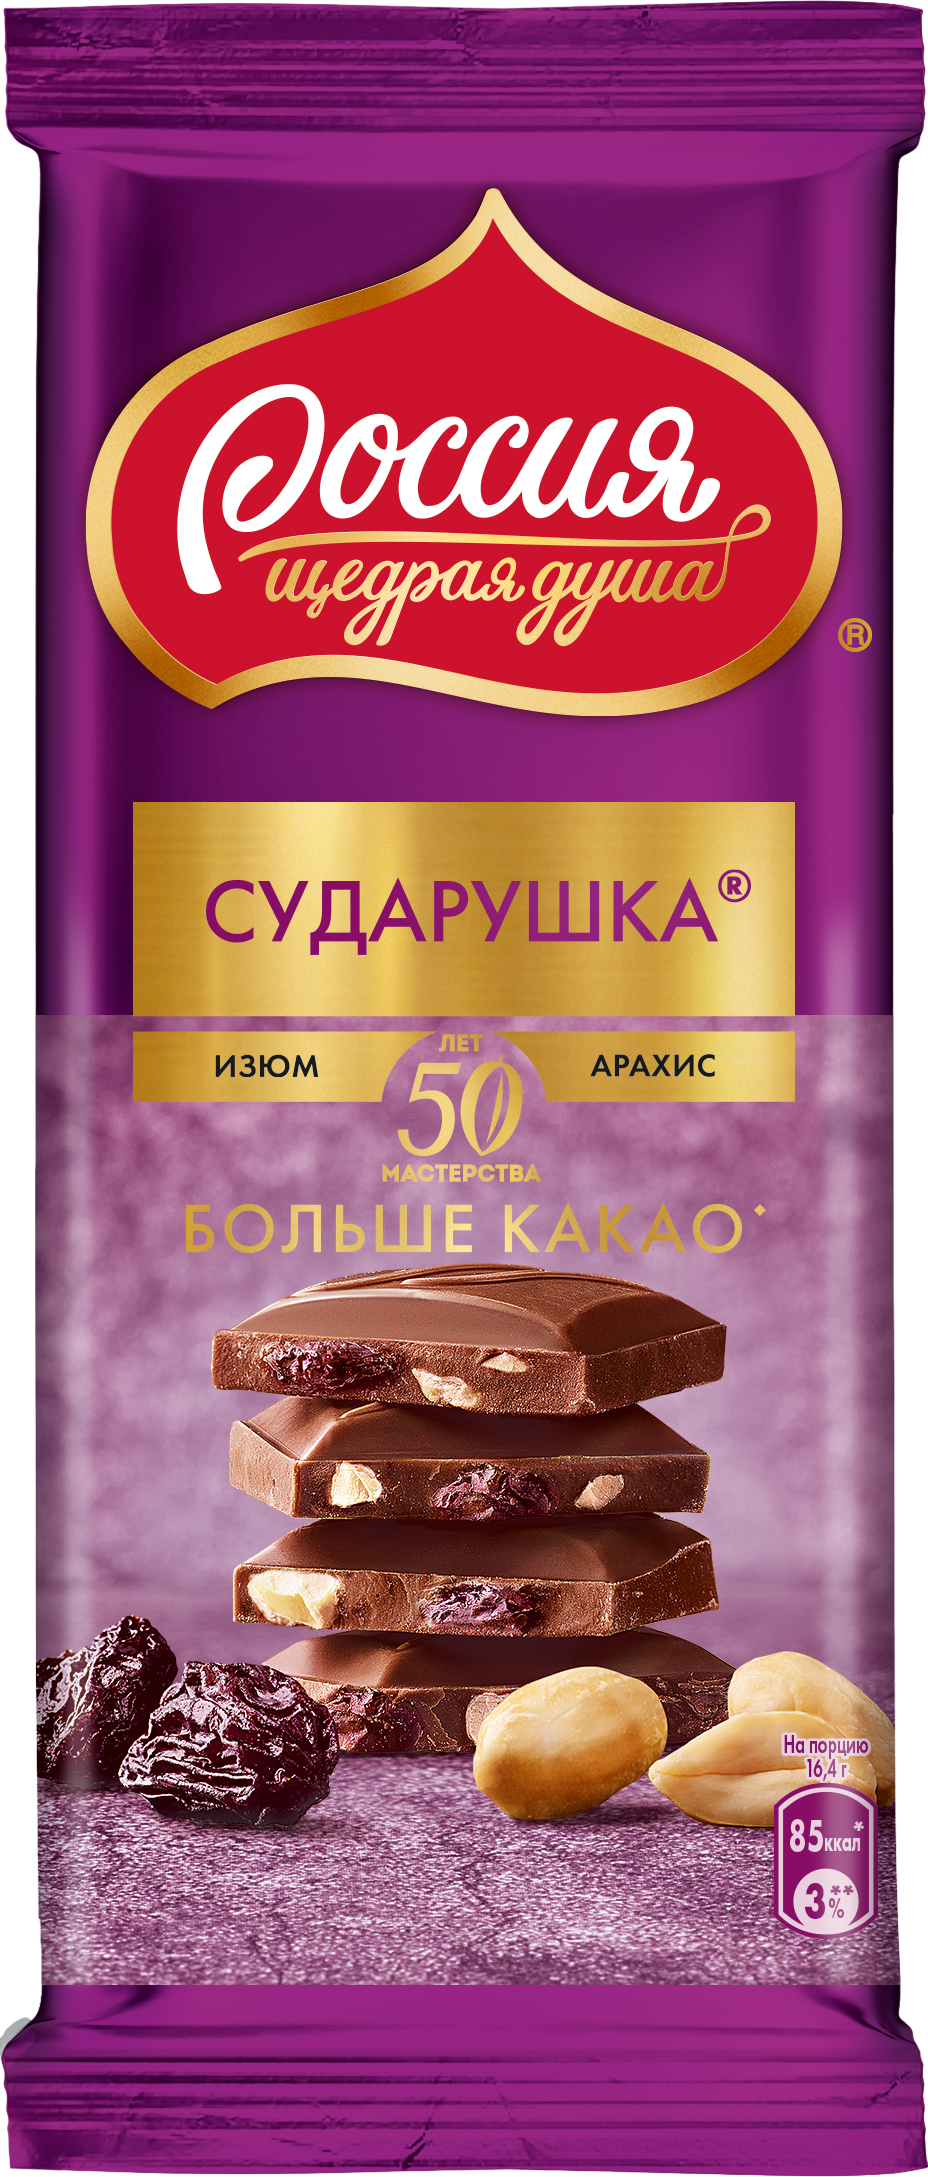 Молочный шоколад Россия - щедрая душа Сударушка с изюмом и арахисом, 5 шт по 82 г